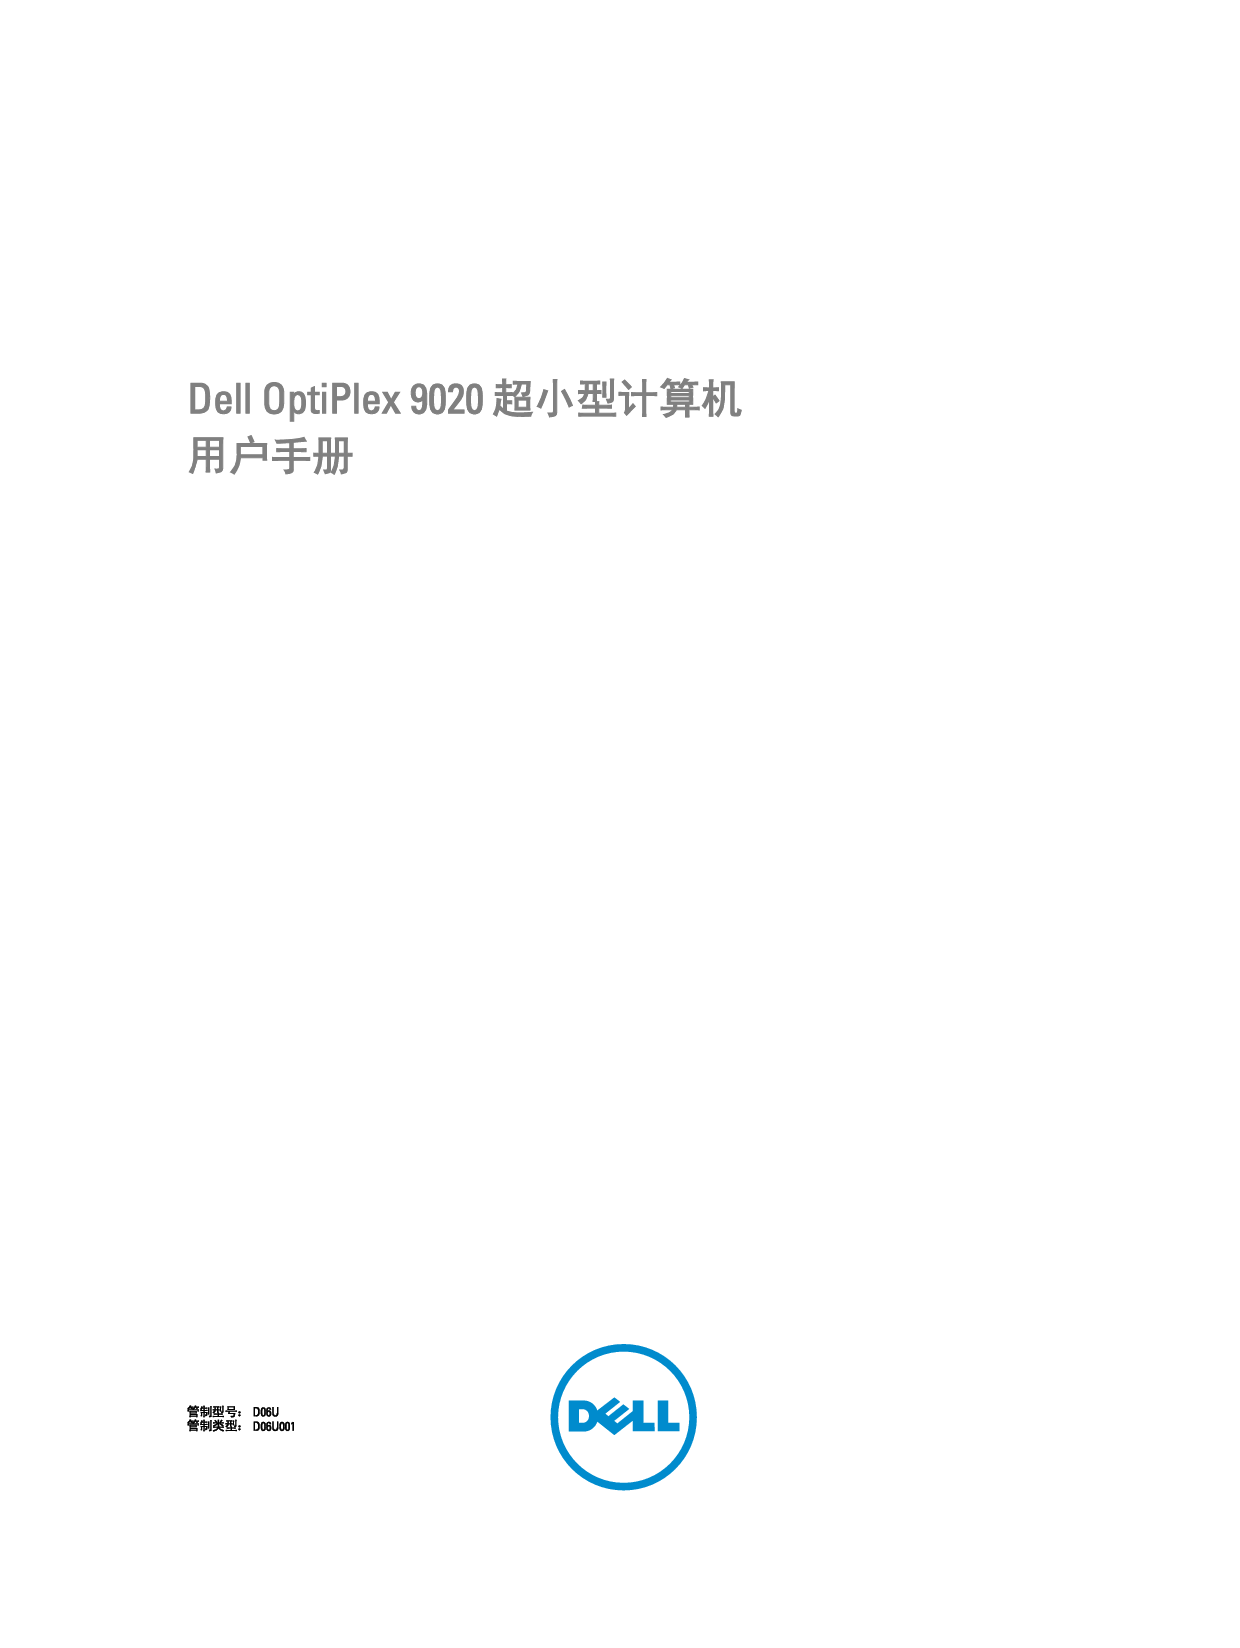 戴尔 Dell Optiplex 9020 超小型 用户手册 封面